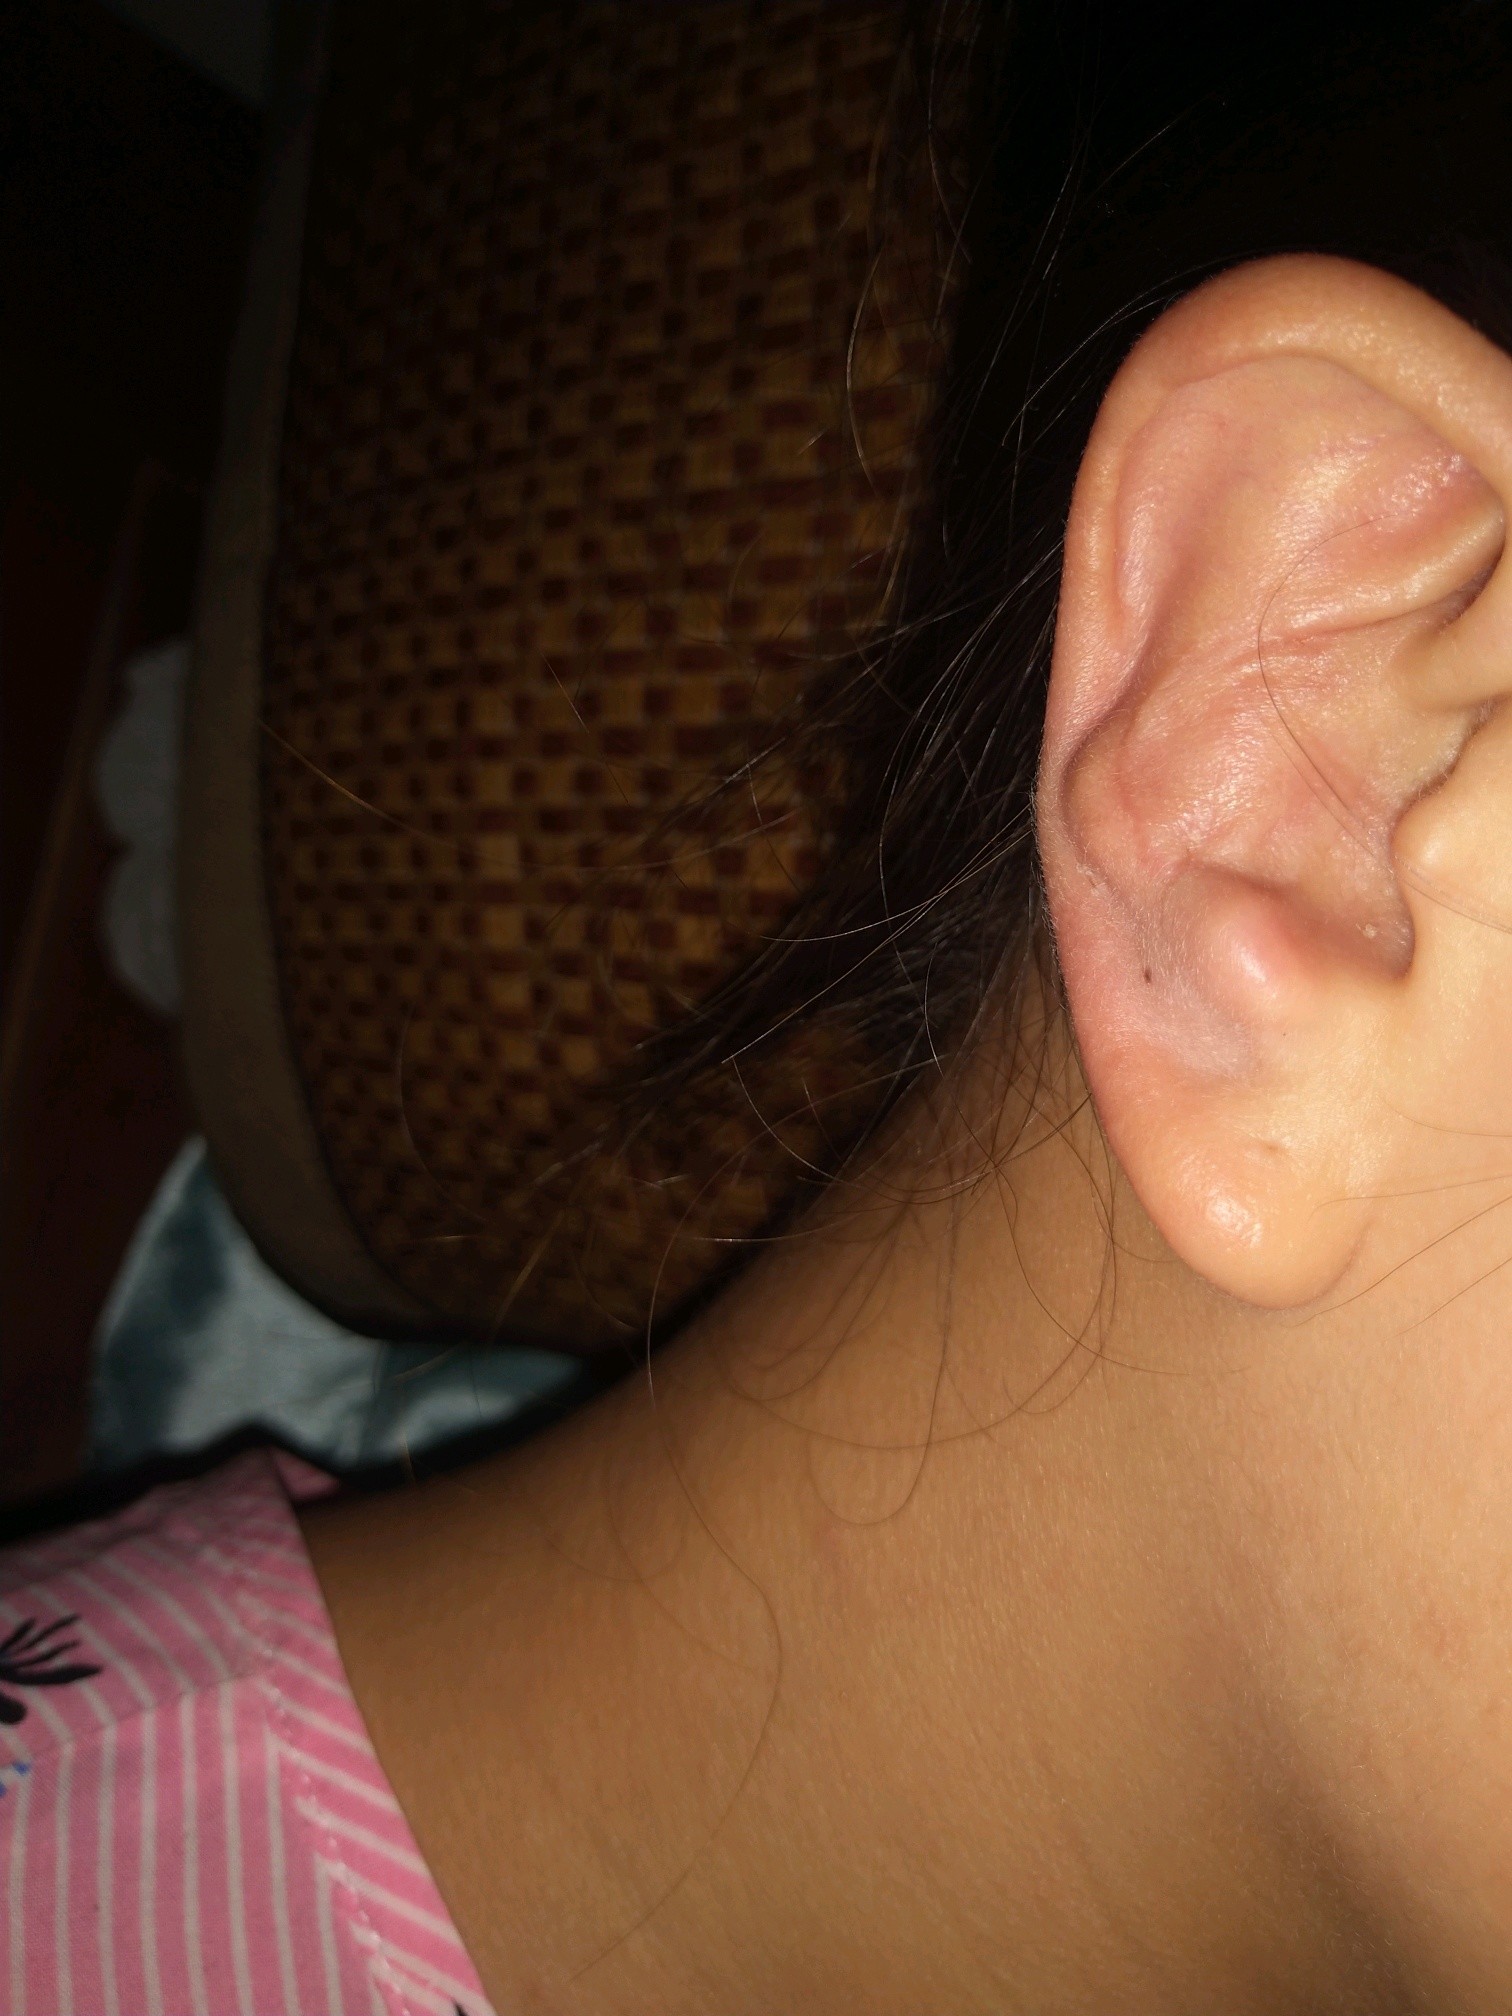 取耳软骨取变形到现在已经有1年多了我想问下这个可以做修复吗耳朵